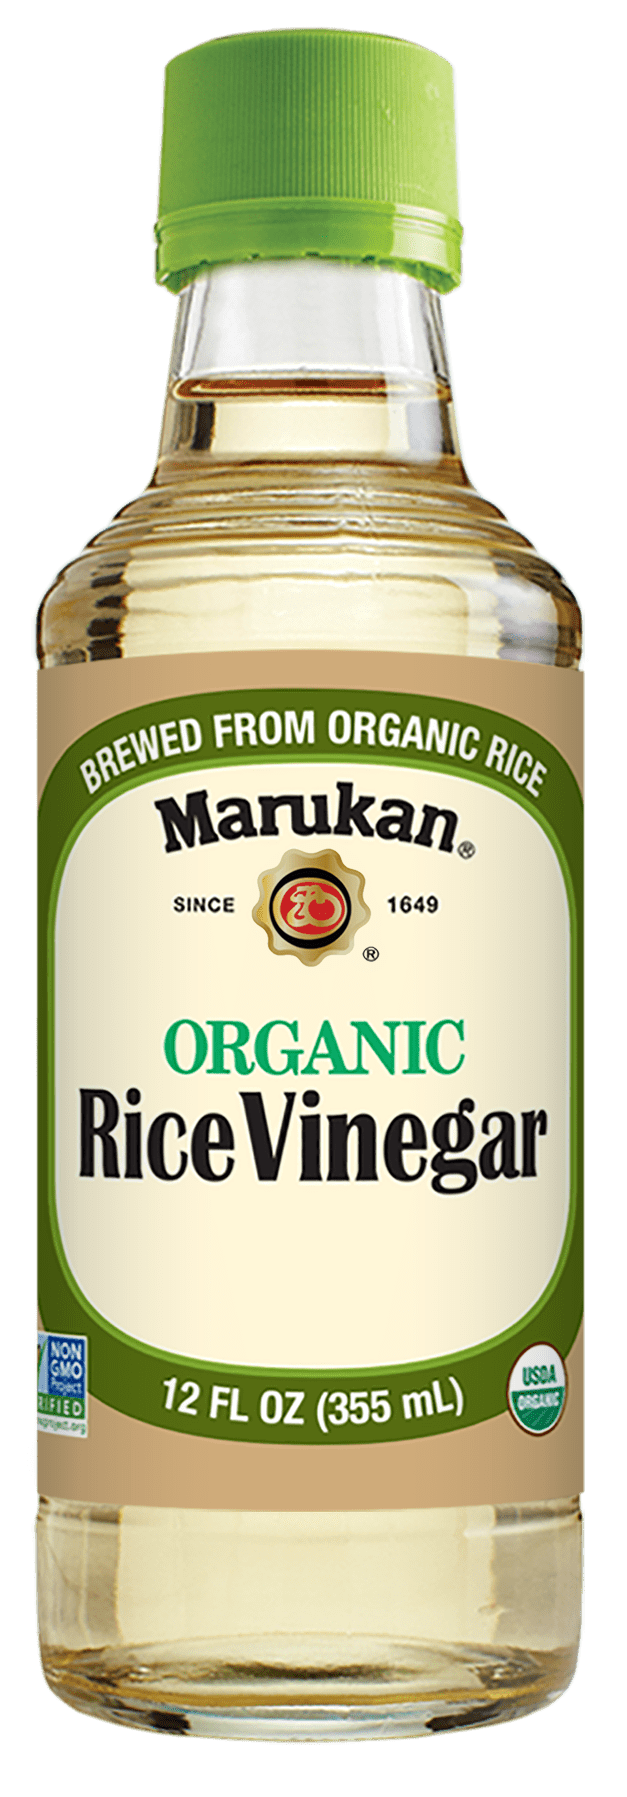 Bottle of Organic Rice Vinegar